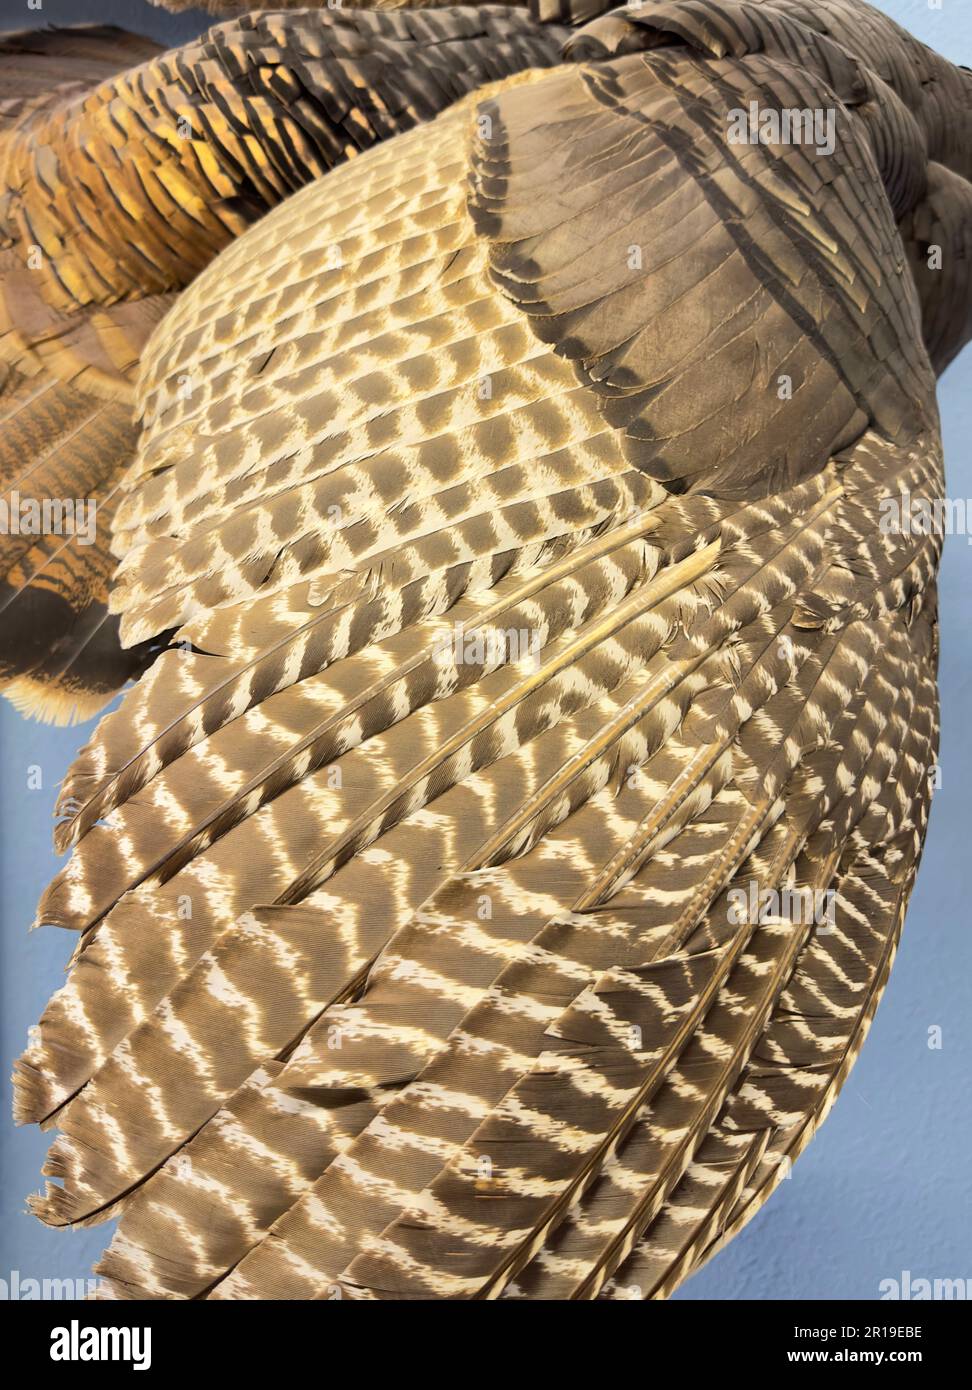 Las plumas de primer plano de las alas de un buitre o un pájaro buitre forman un patrón y una textura con ondulaciones amarillas y bronceadas que muestran cómo se espacian y encajan. Foto de stock